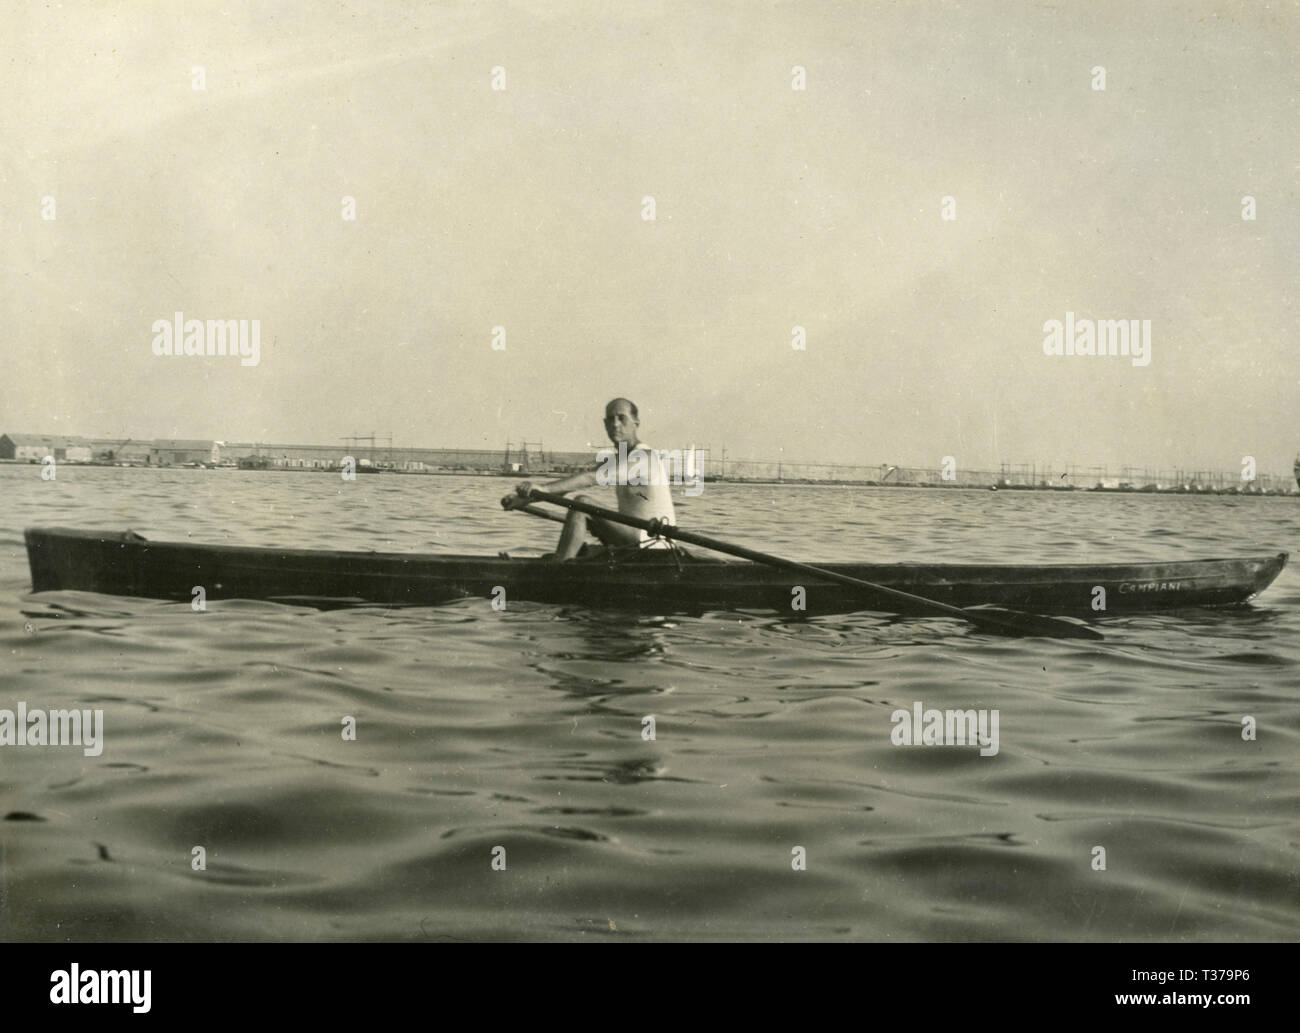 Man paddling in a canoe, Italy 1920s Stock Photo